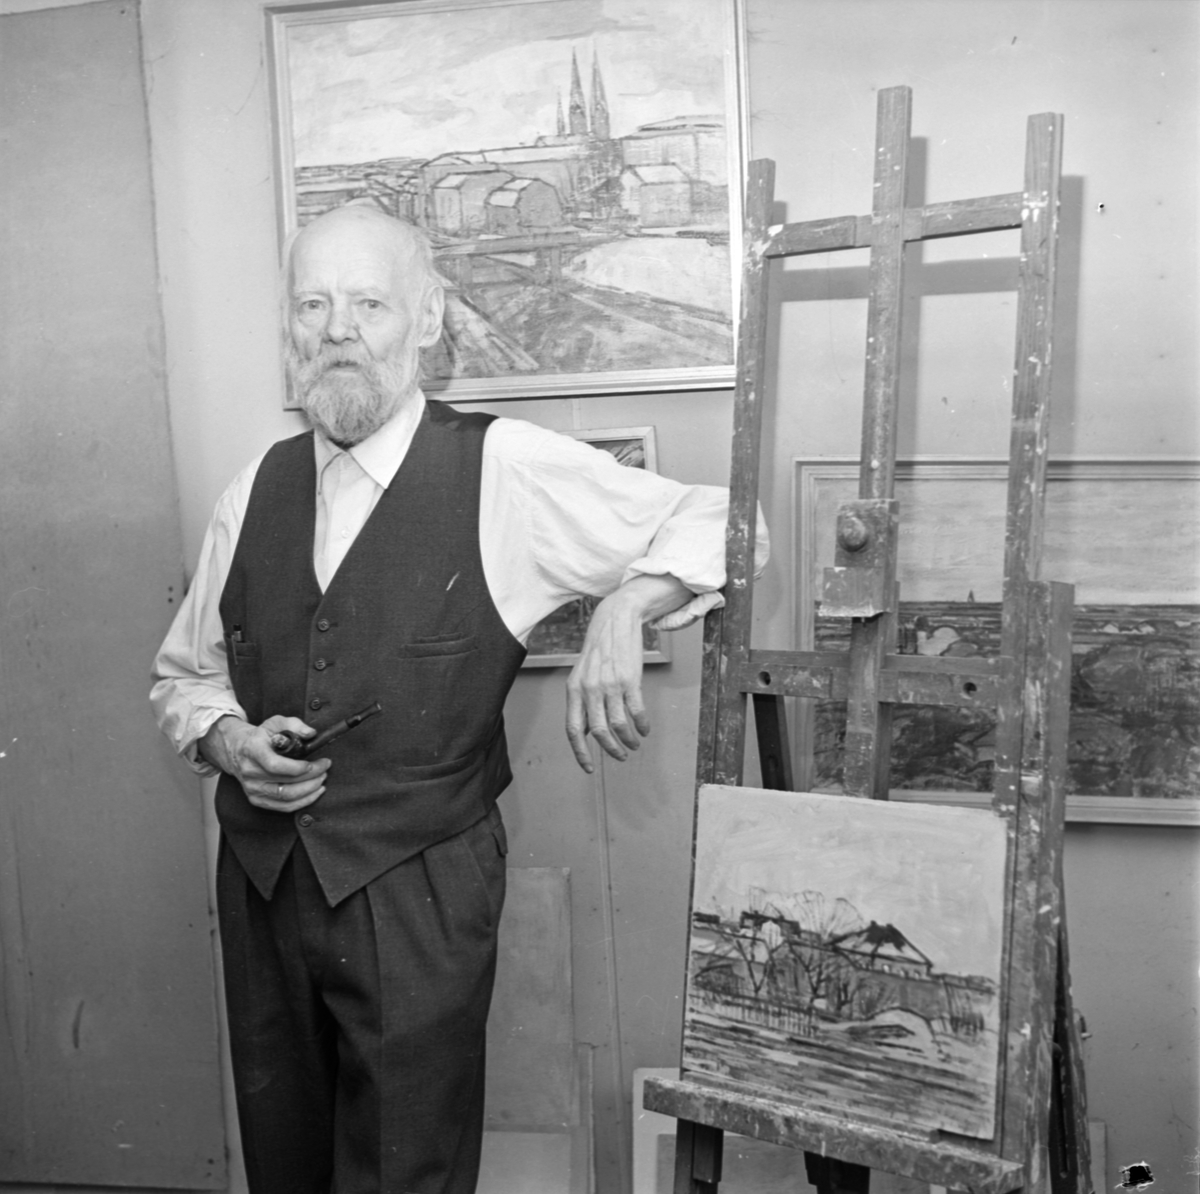 Konstnären Gusten Widerbäck i sitt hem med sina tavlor, Uppsala december 1961